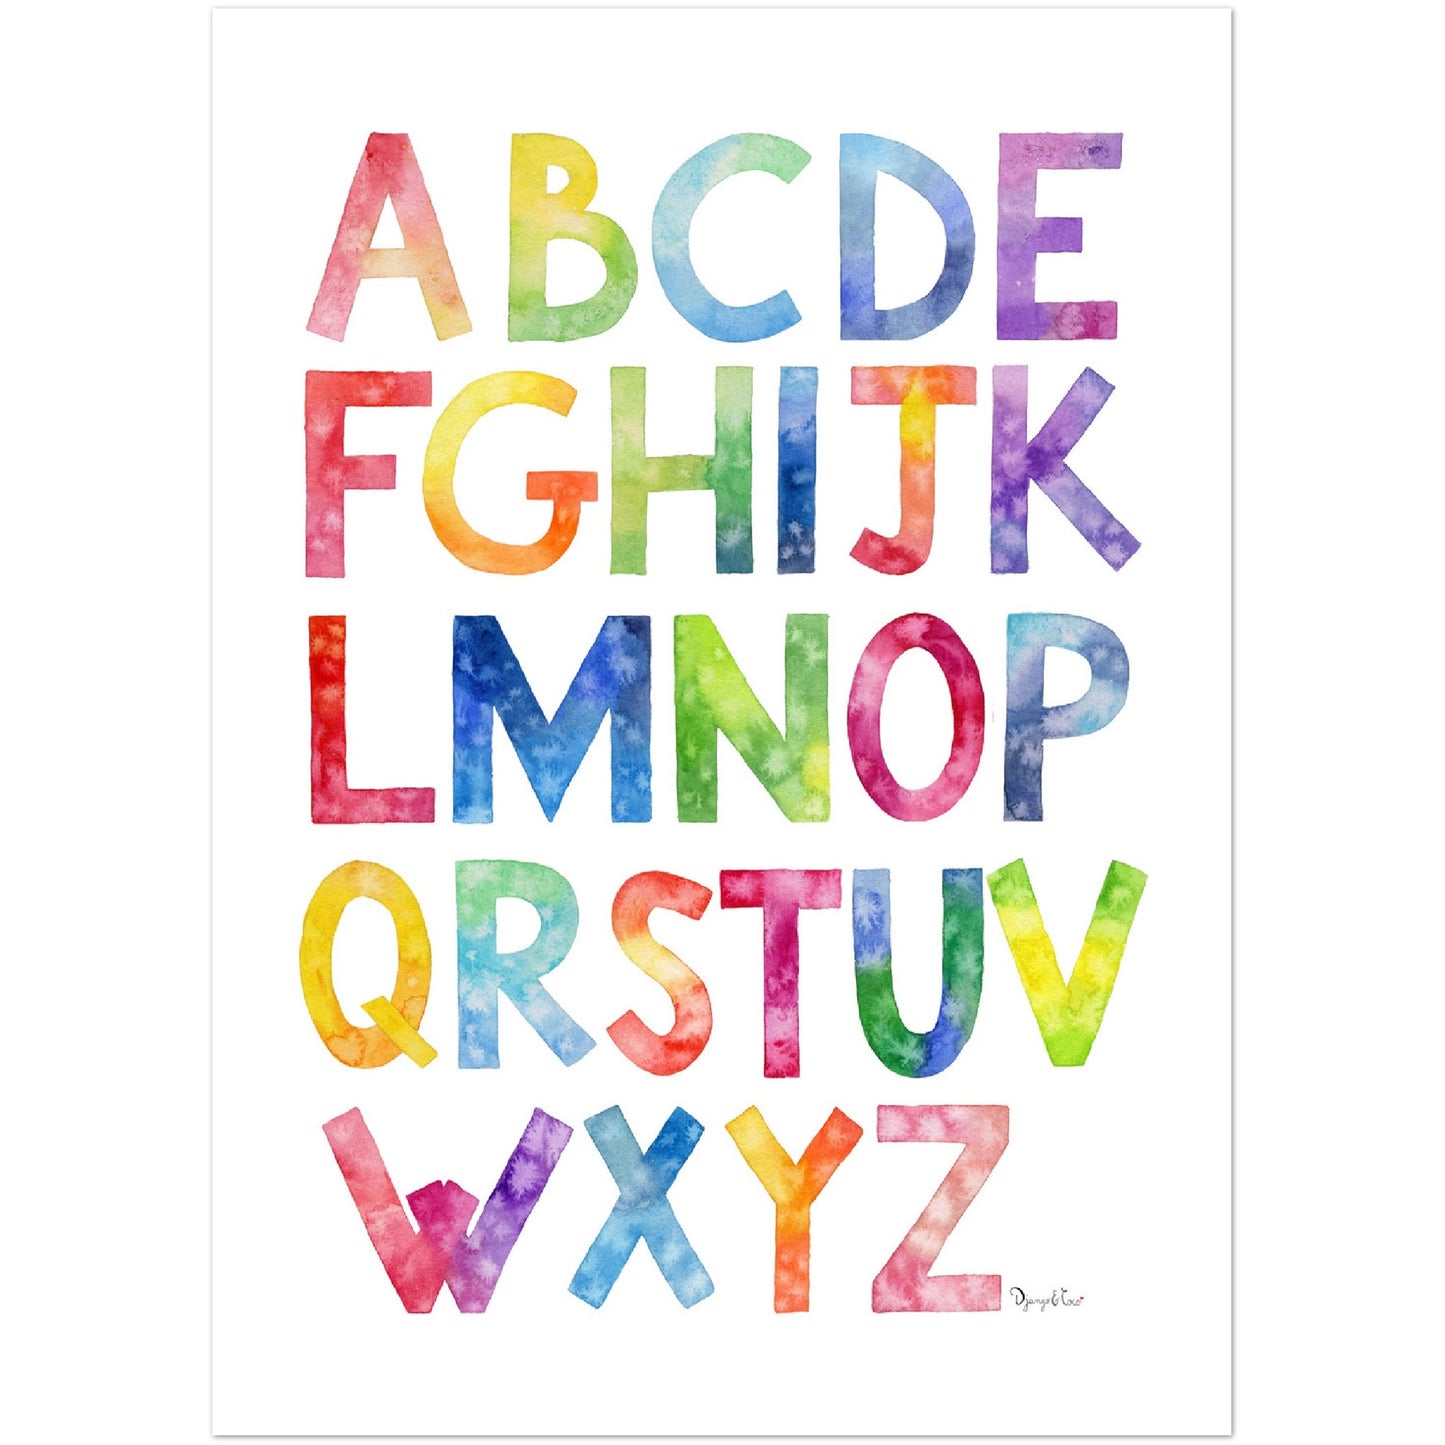 Affiche enfant- Aabécédaire Arc-en-ciel pour apprendre l'alphabet